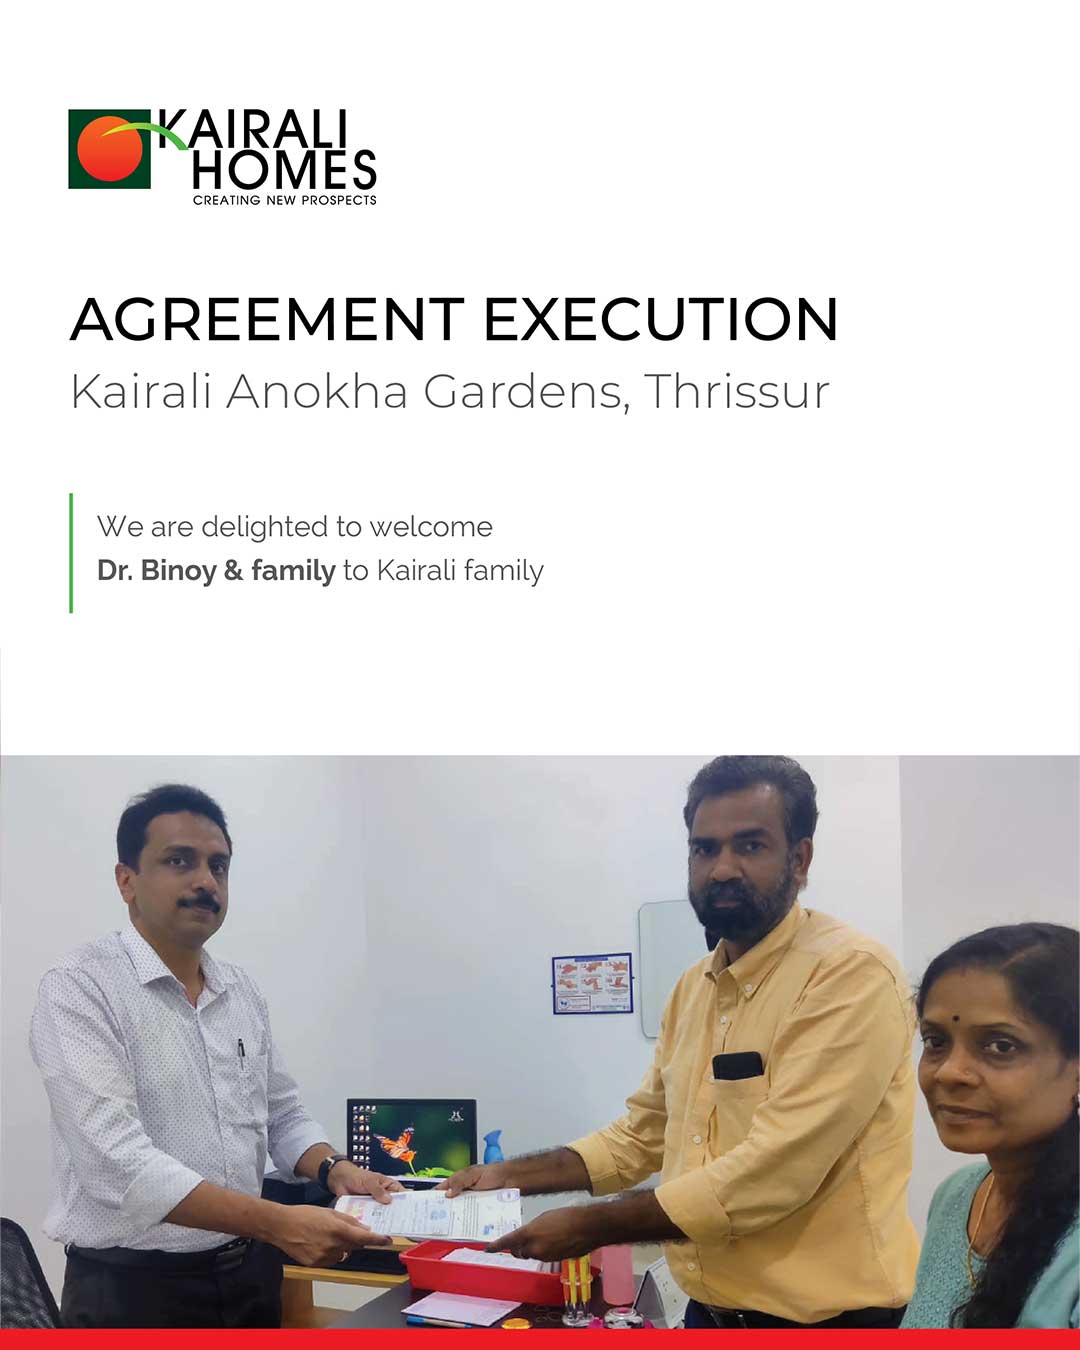 Agreement Execution - Kairali Anokha Gardens, Thrissur Dr. Binoy & family